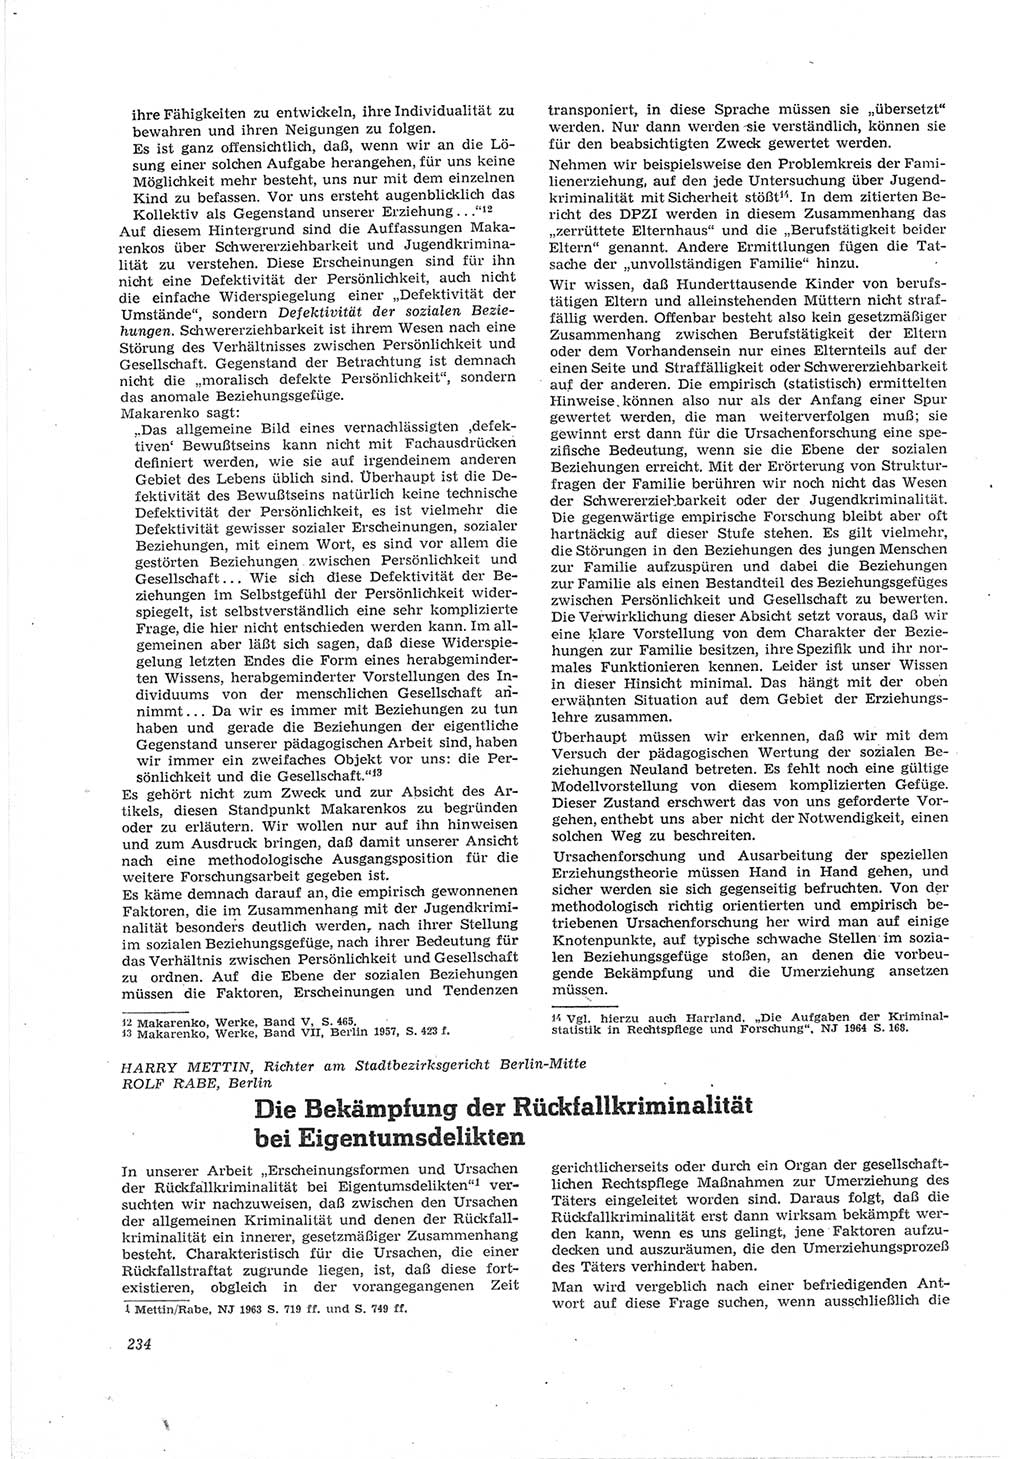 Neue Justiz (NJ), Zeitschrift für Recht und Rechtswissenschaft [Deutsche Demokratische Republik (DDR)], 18. Jahrgang 1964, Seite 234 (NJ DDR 1964, S. 234)